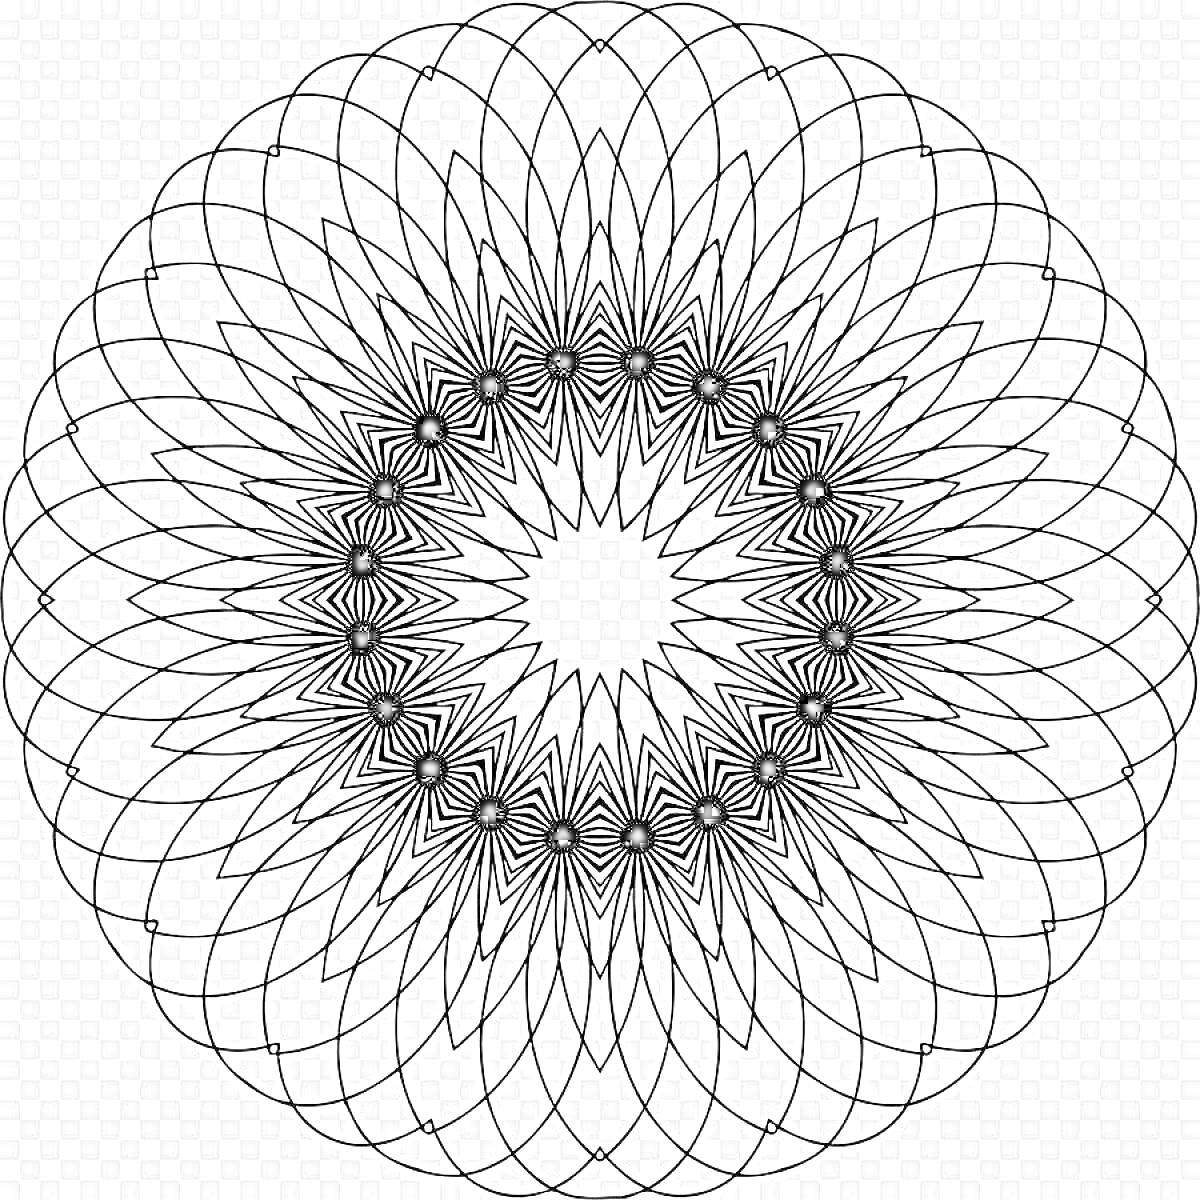 Раскраска Чёрно-белая спиральная мандала с пересекающимися линиями и узором, образующим цветок